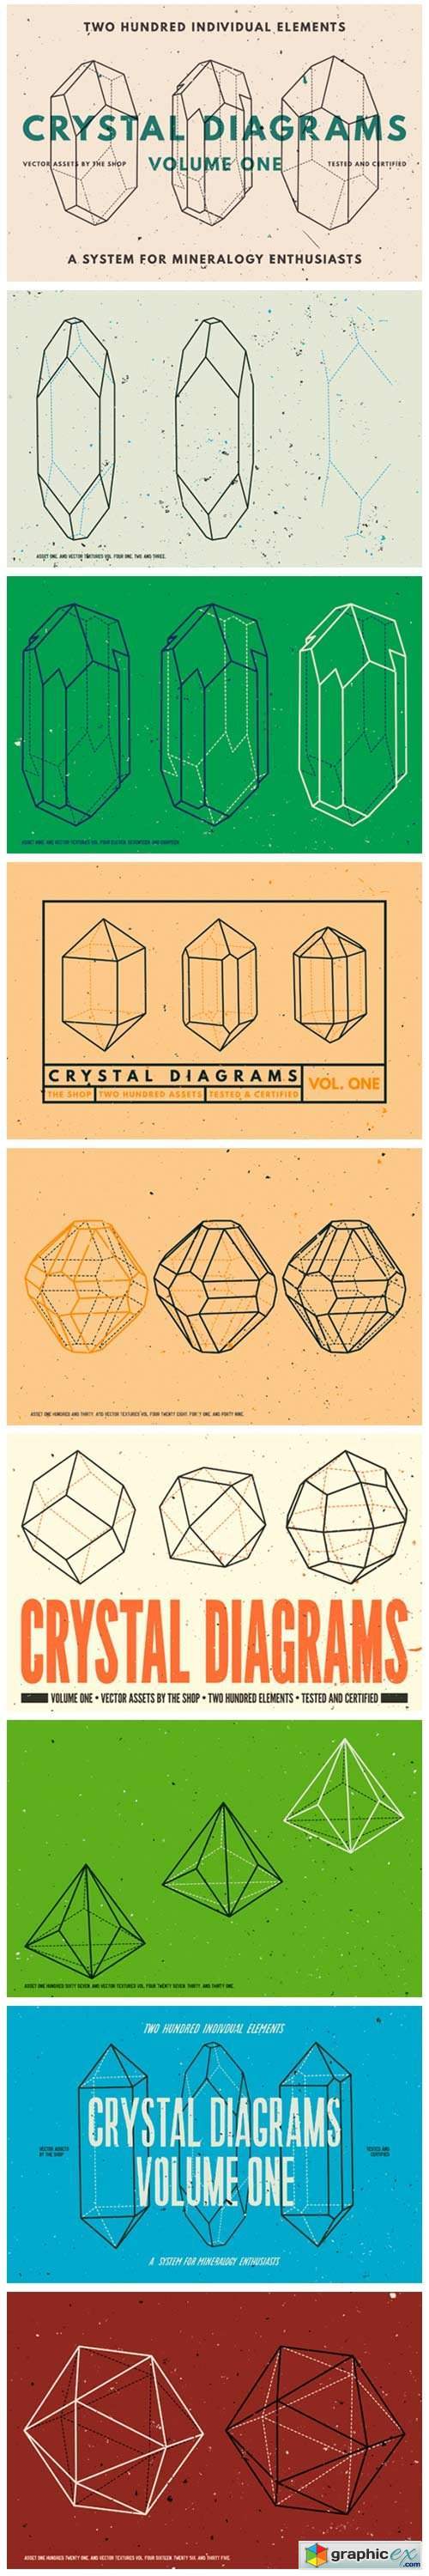 Crystal Diagrams Vol. 01